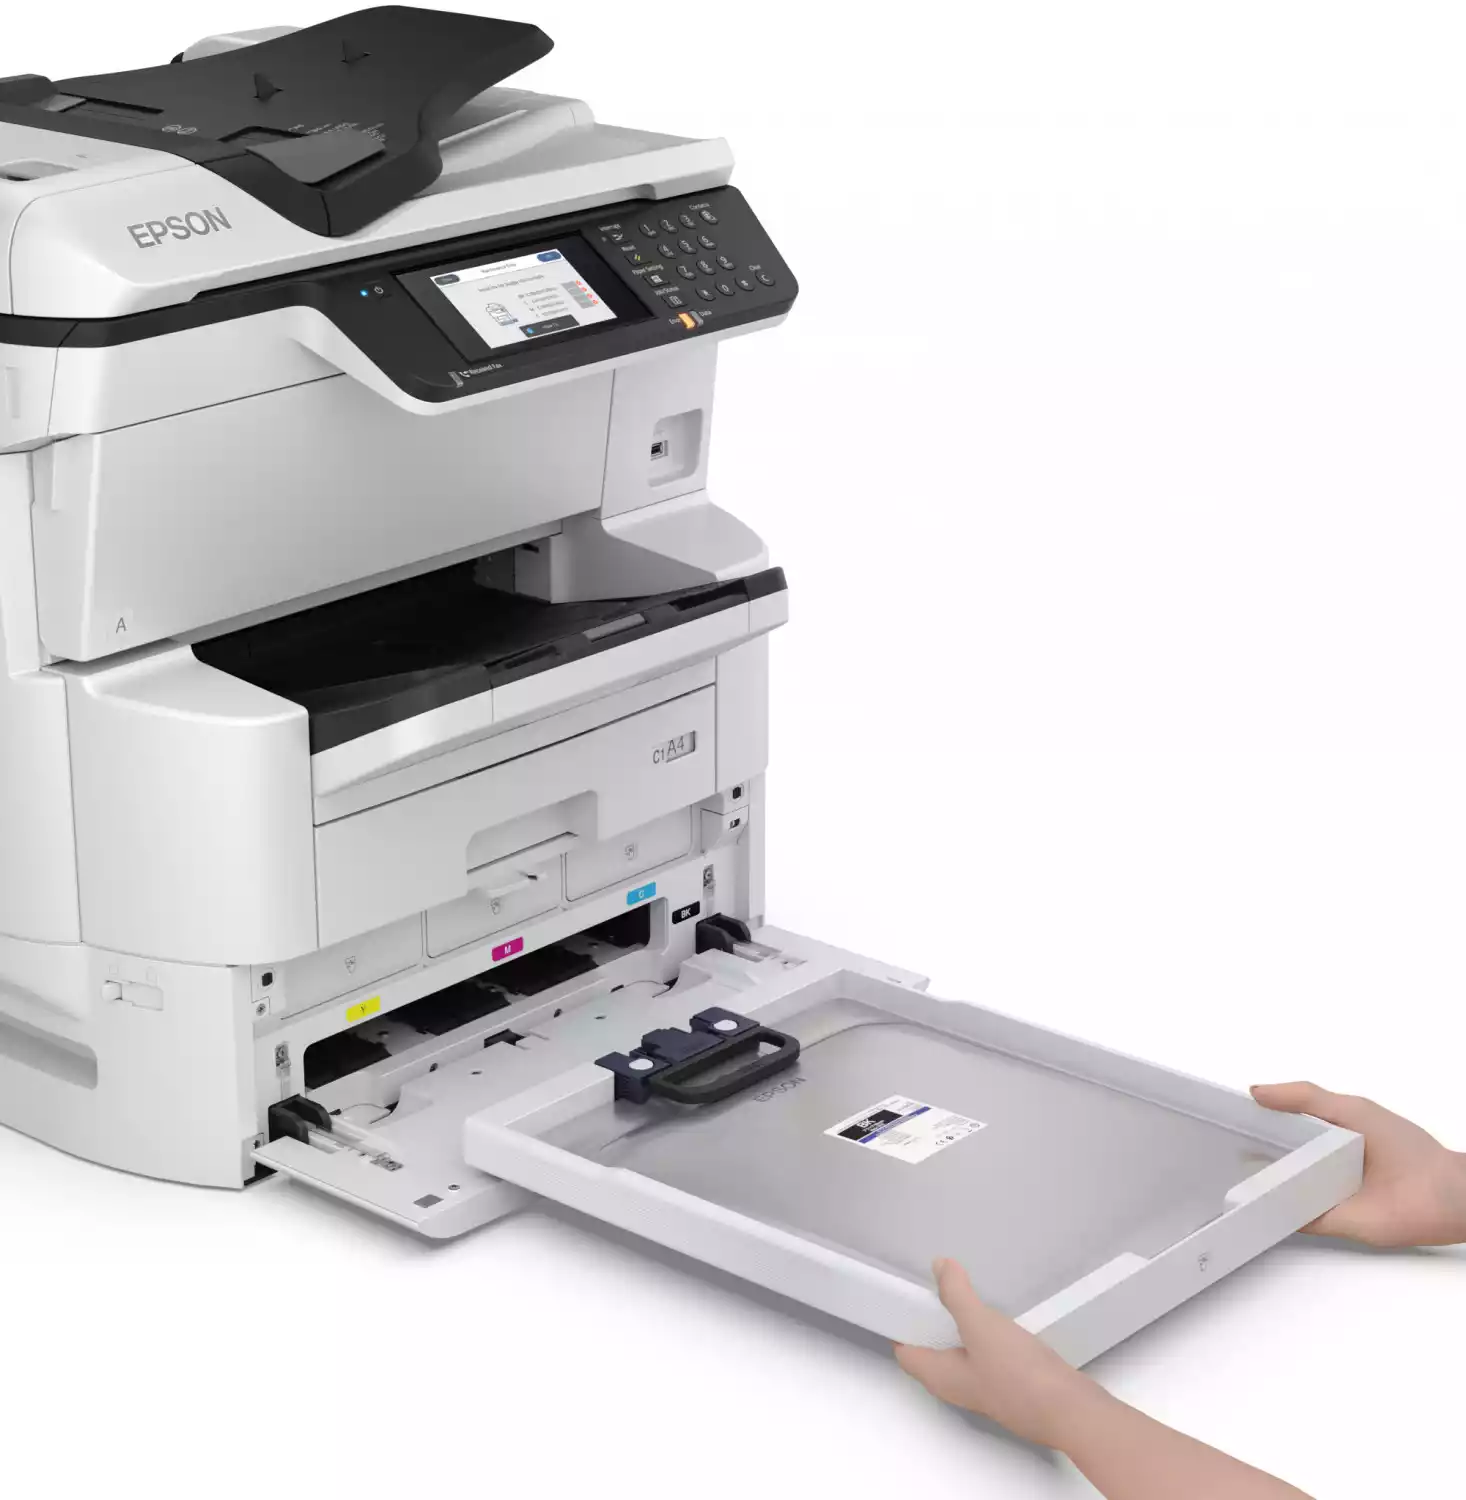 Impresora multifunción con cajón abierto para cambio de tintas EPSON bolsa color negro